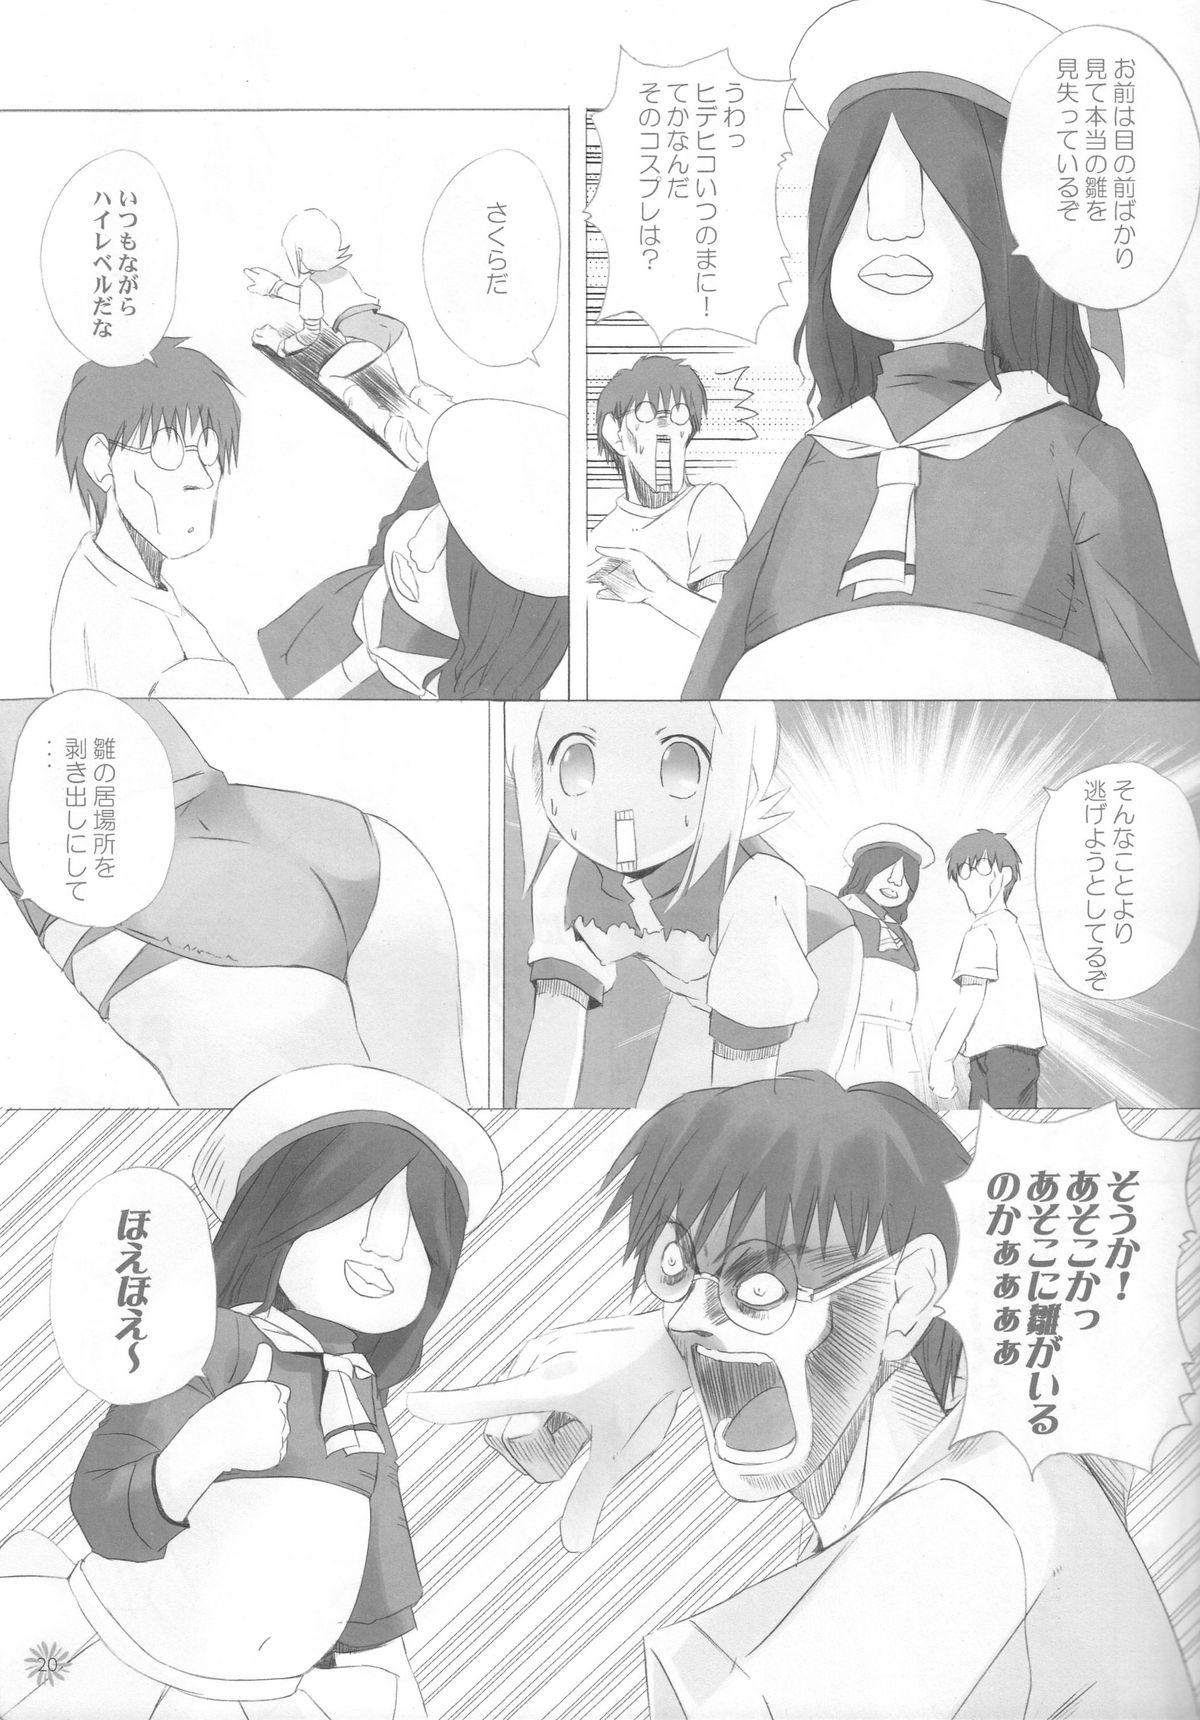 Sucks CAPTOR - Cardcaptor sakura Higurashi no naku koro ni Diebuster Escort - Page 12